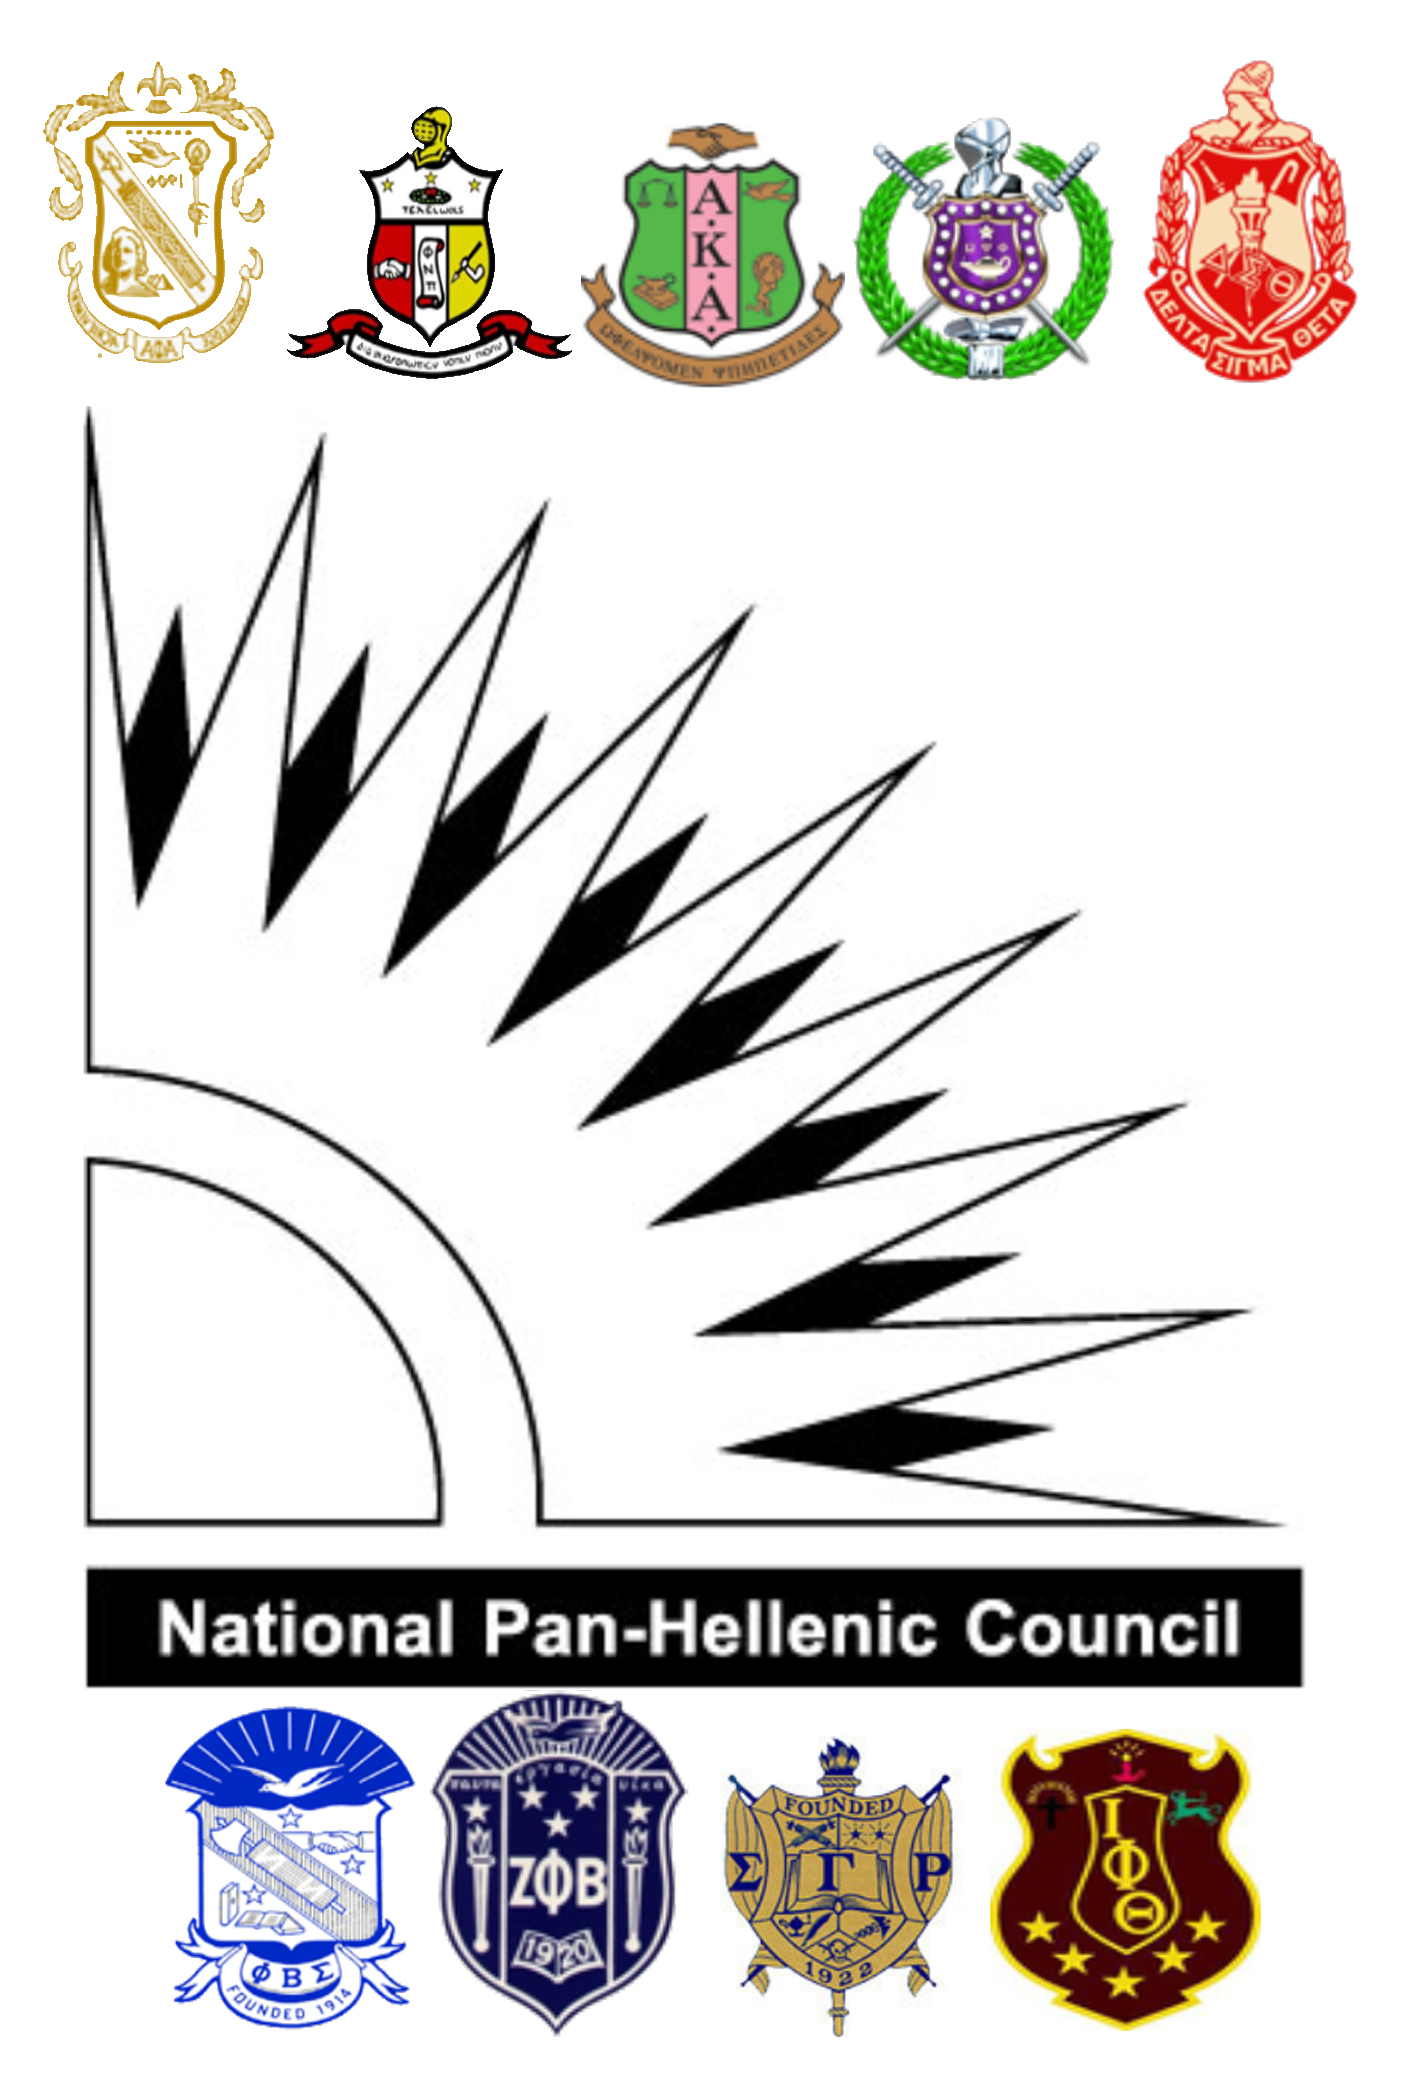 NPHC Logo